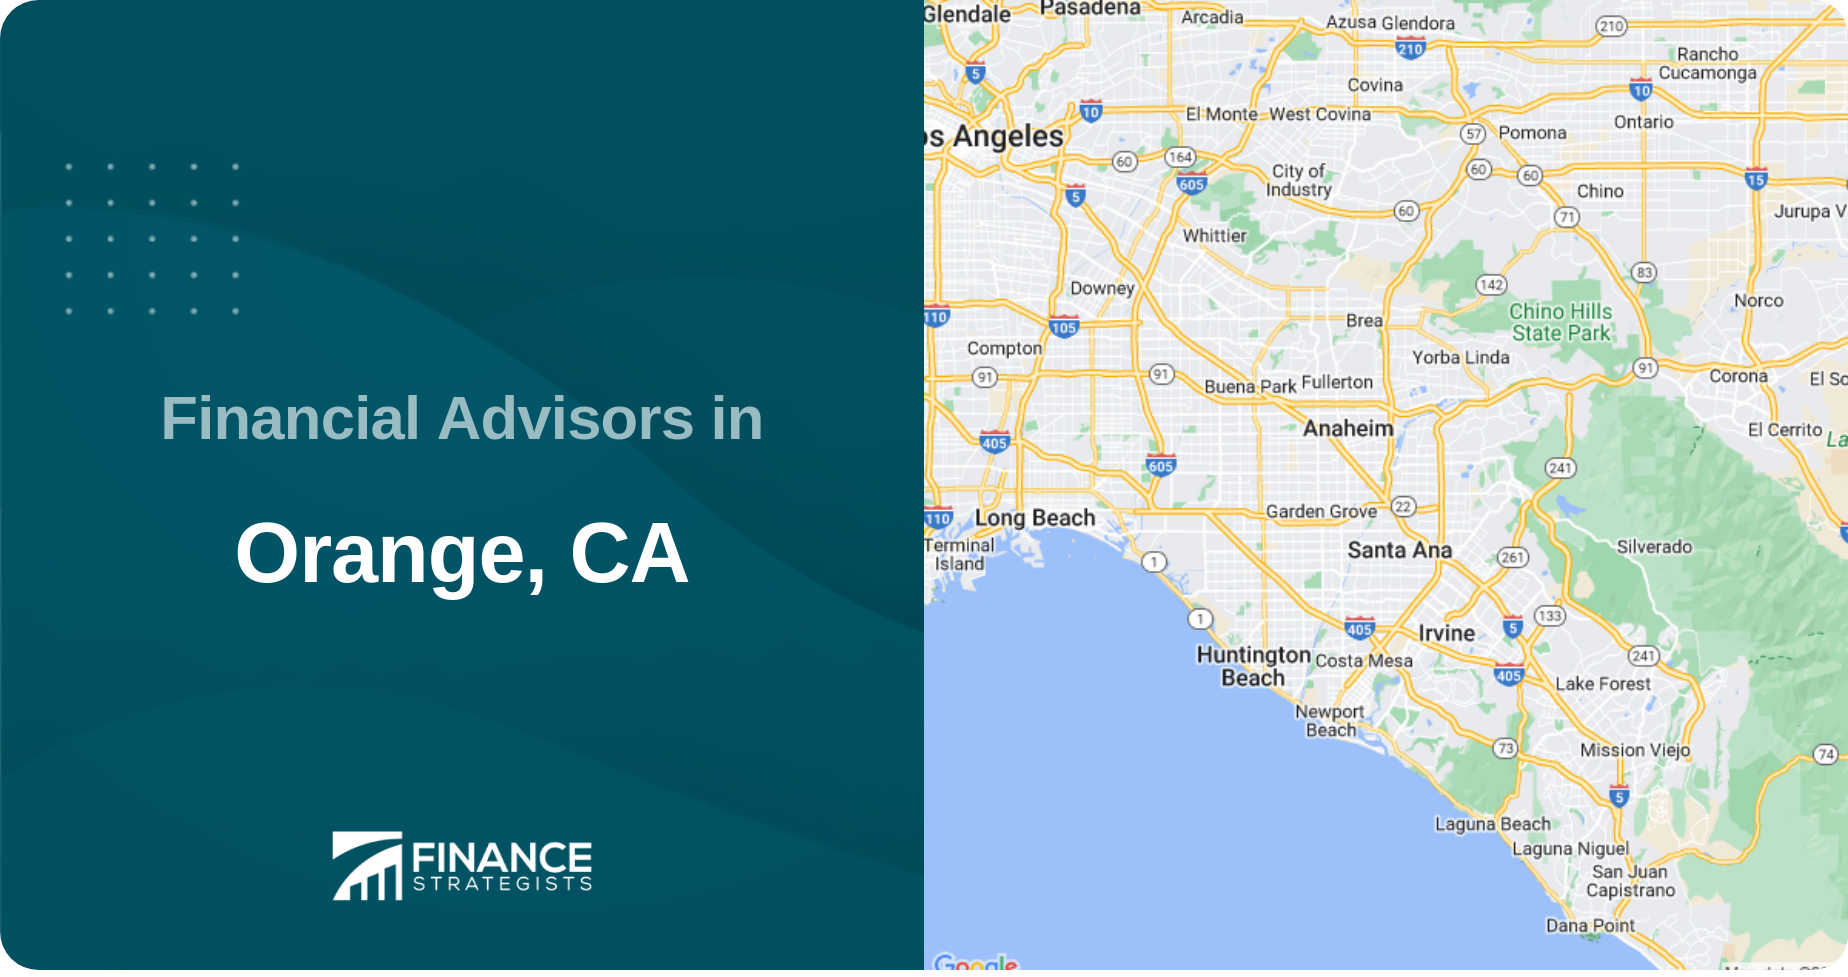 Financial Advisors in Orange, CA